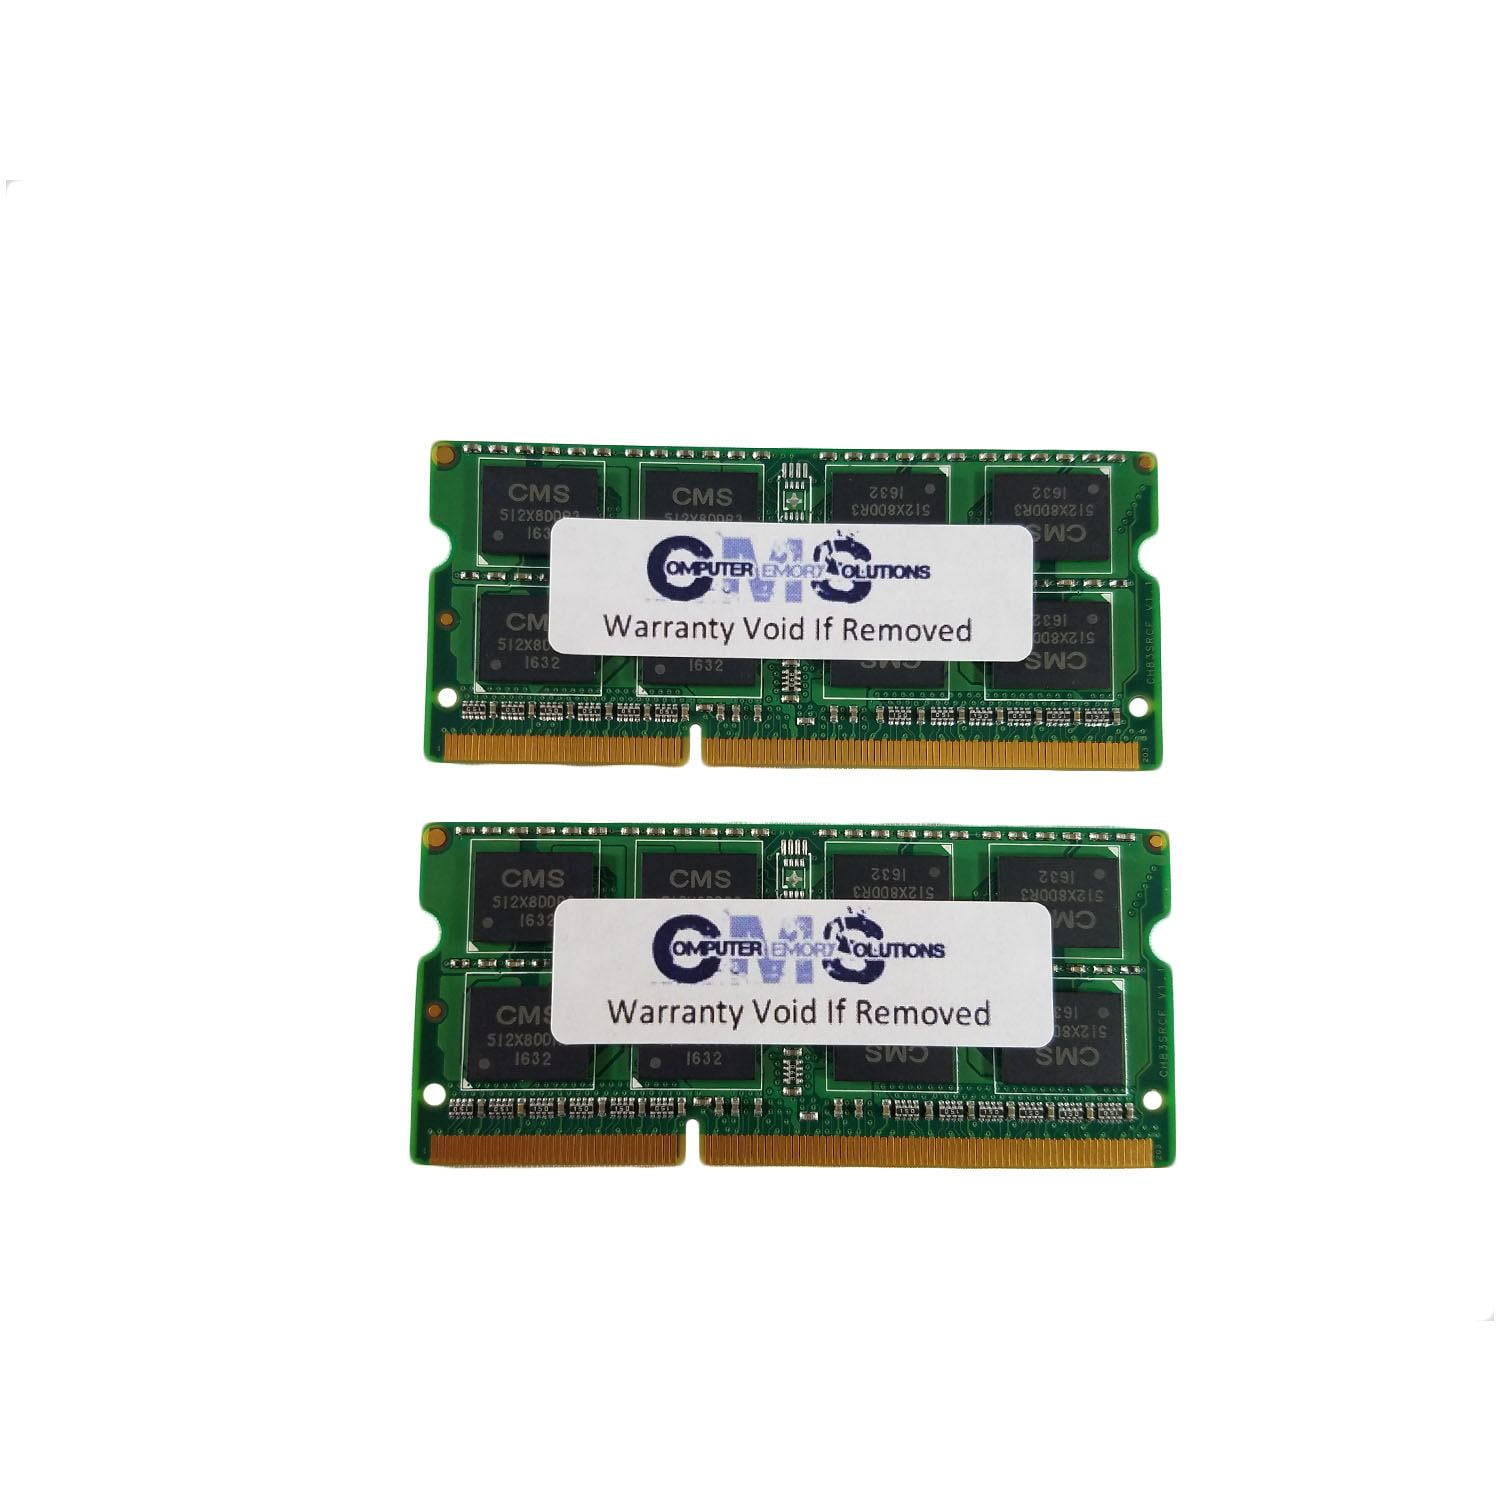 ユナイテッドトウキョウ CMS 16GB (2X8GB) DDR3 12800 1600MHz Non ECC SODIMM Memory Ram  Upgrade Compatible with Aspire Acer? V5-561P-6823, V5-561P-6869,  V5-561P-9477 A7